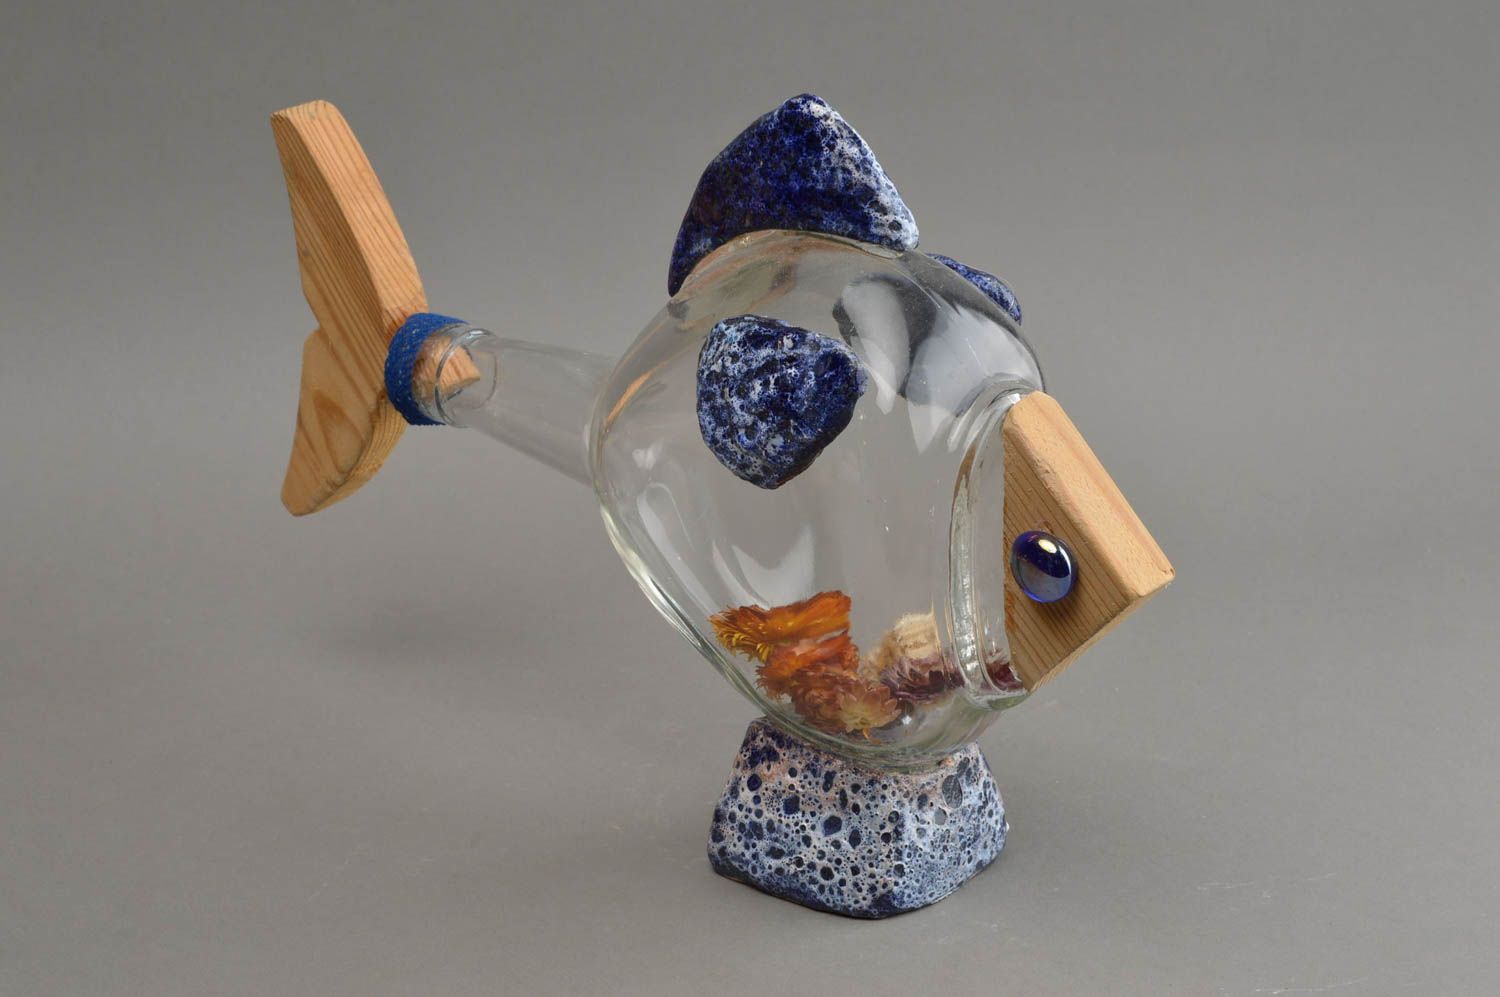 Статуэтка рыбы птицы на основе стеклянной бутылки ручной работы авторский декор фото 3